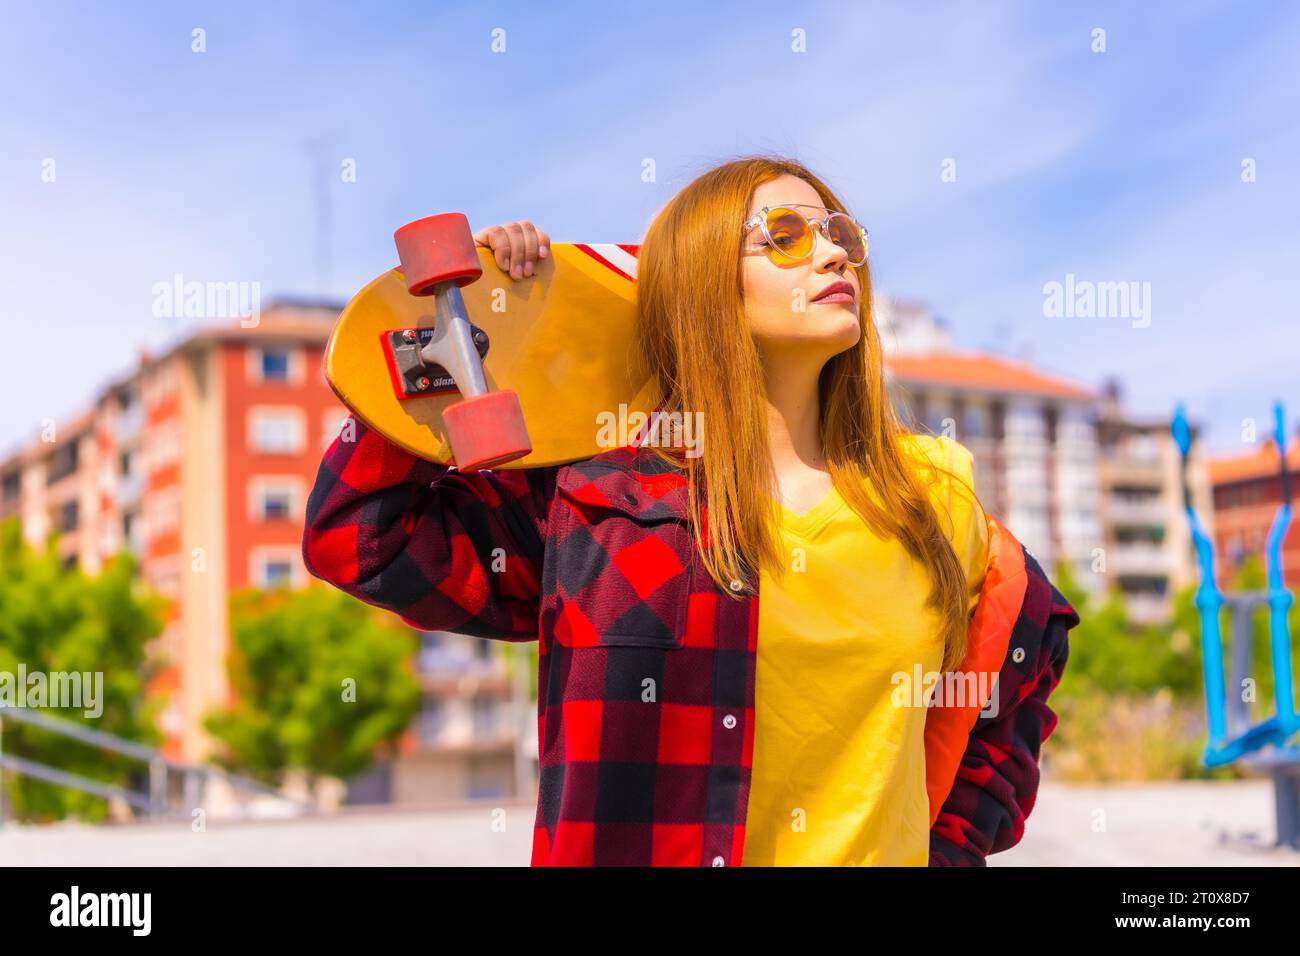 Mujer skater en una camiseta amarilla, camisa de cuadros rojos y gafas de sol, pensativamente mirando a la derecha Foto de stock